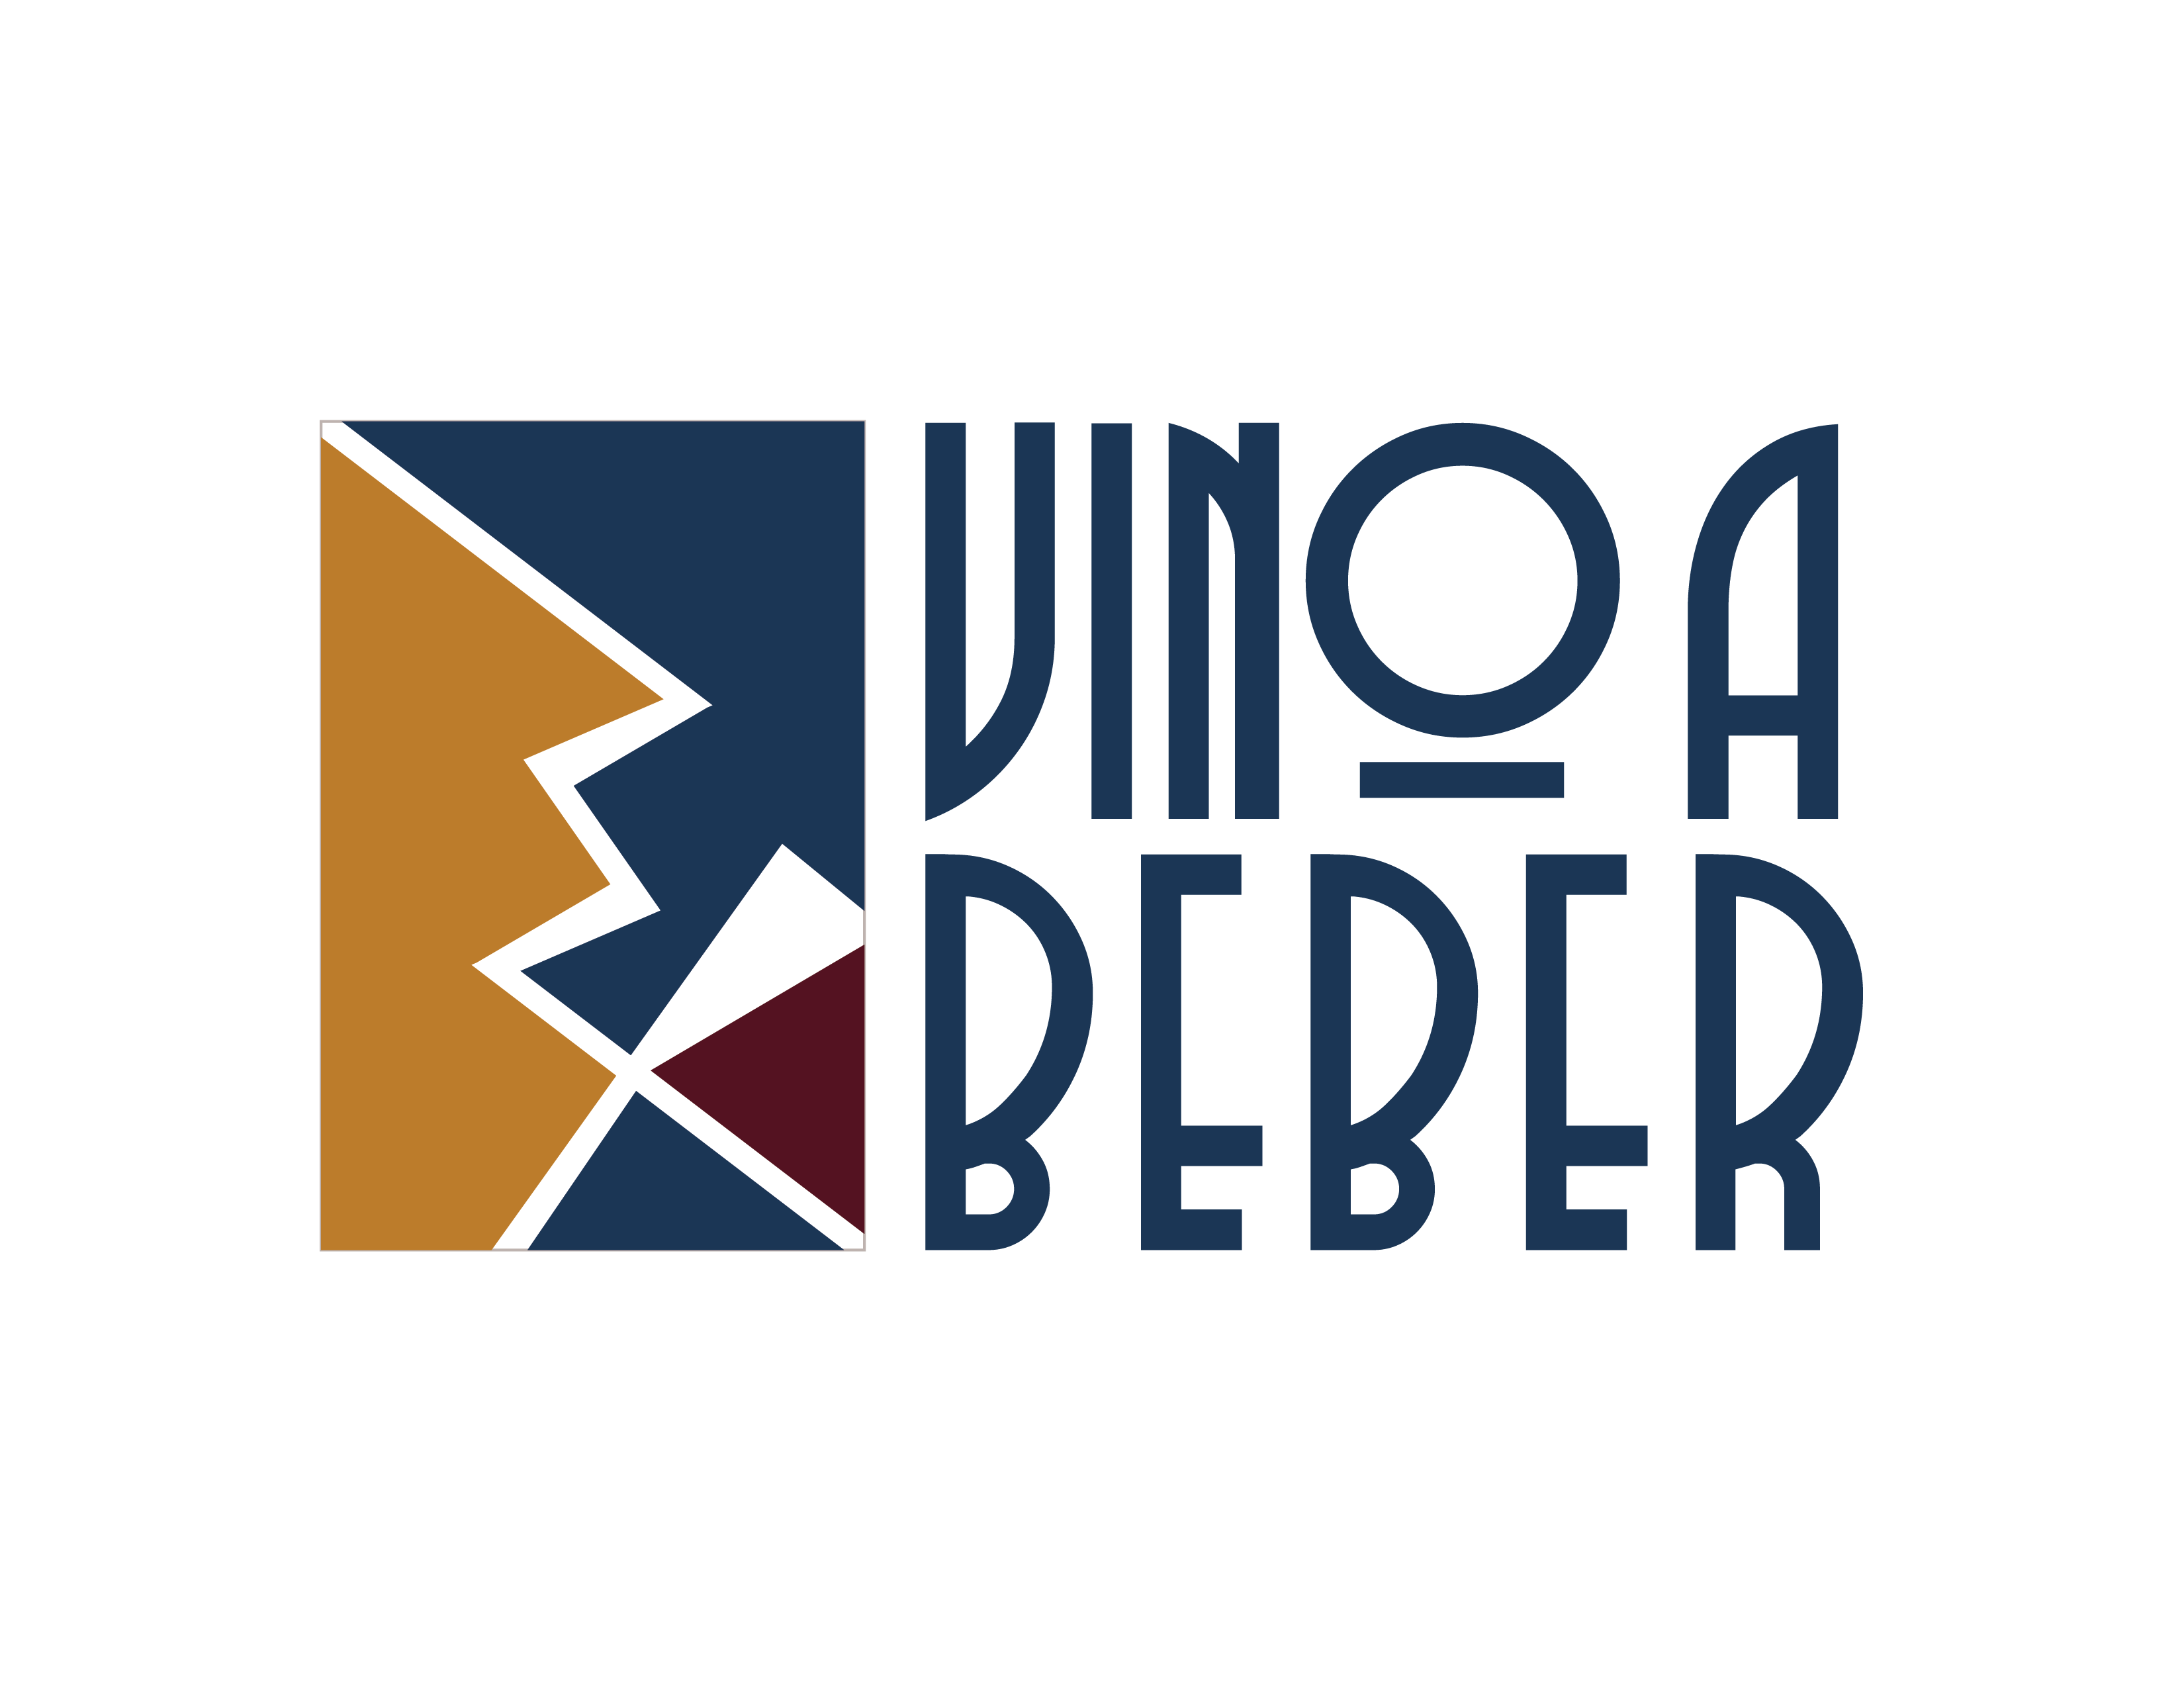 vinoabeber Logo